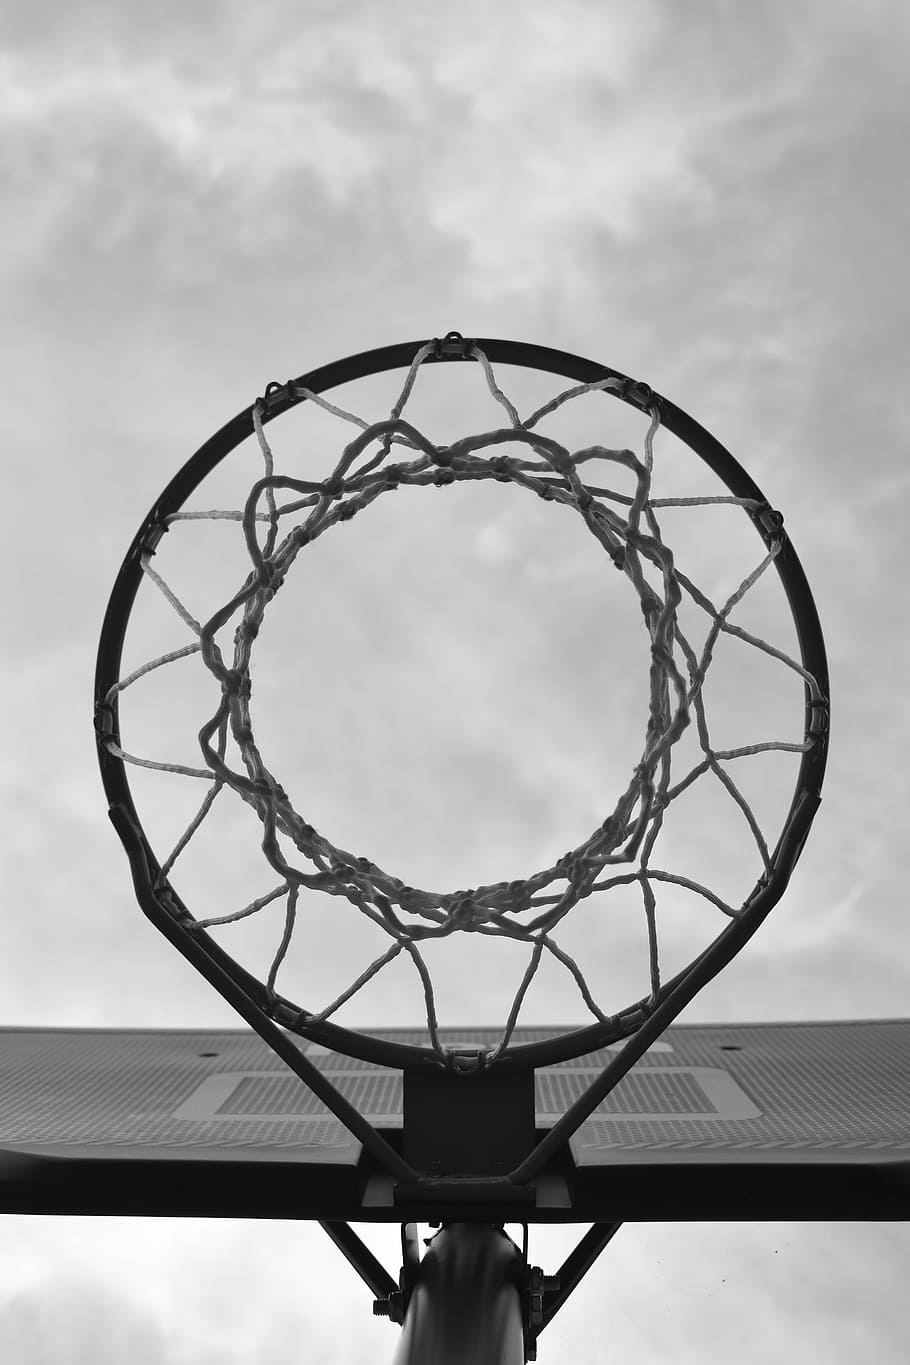 bottom shot photo of basketball hoop, sport, net, urban, basketball - sport, HD wallpaper